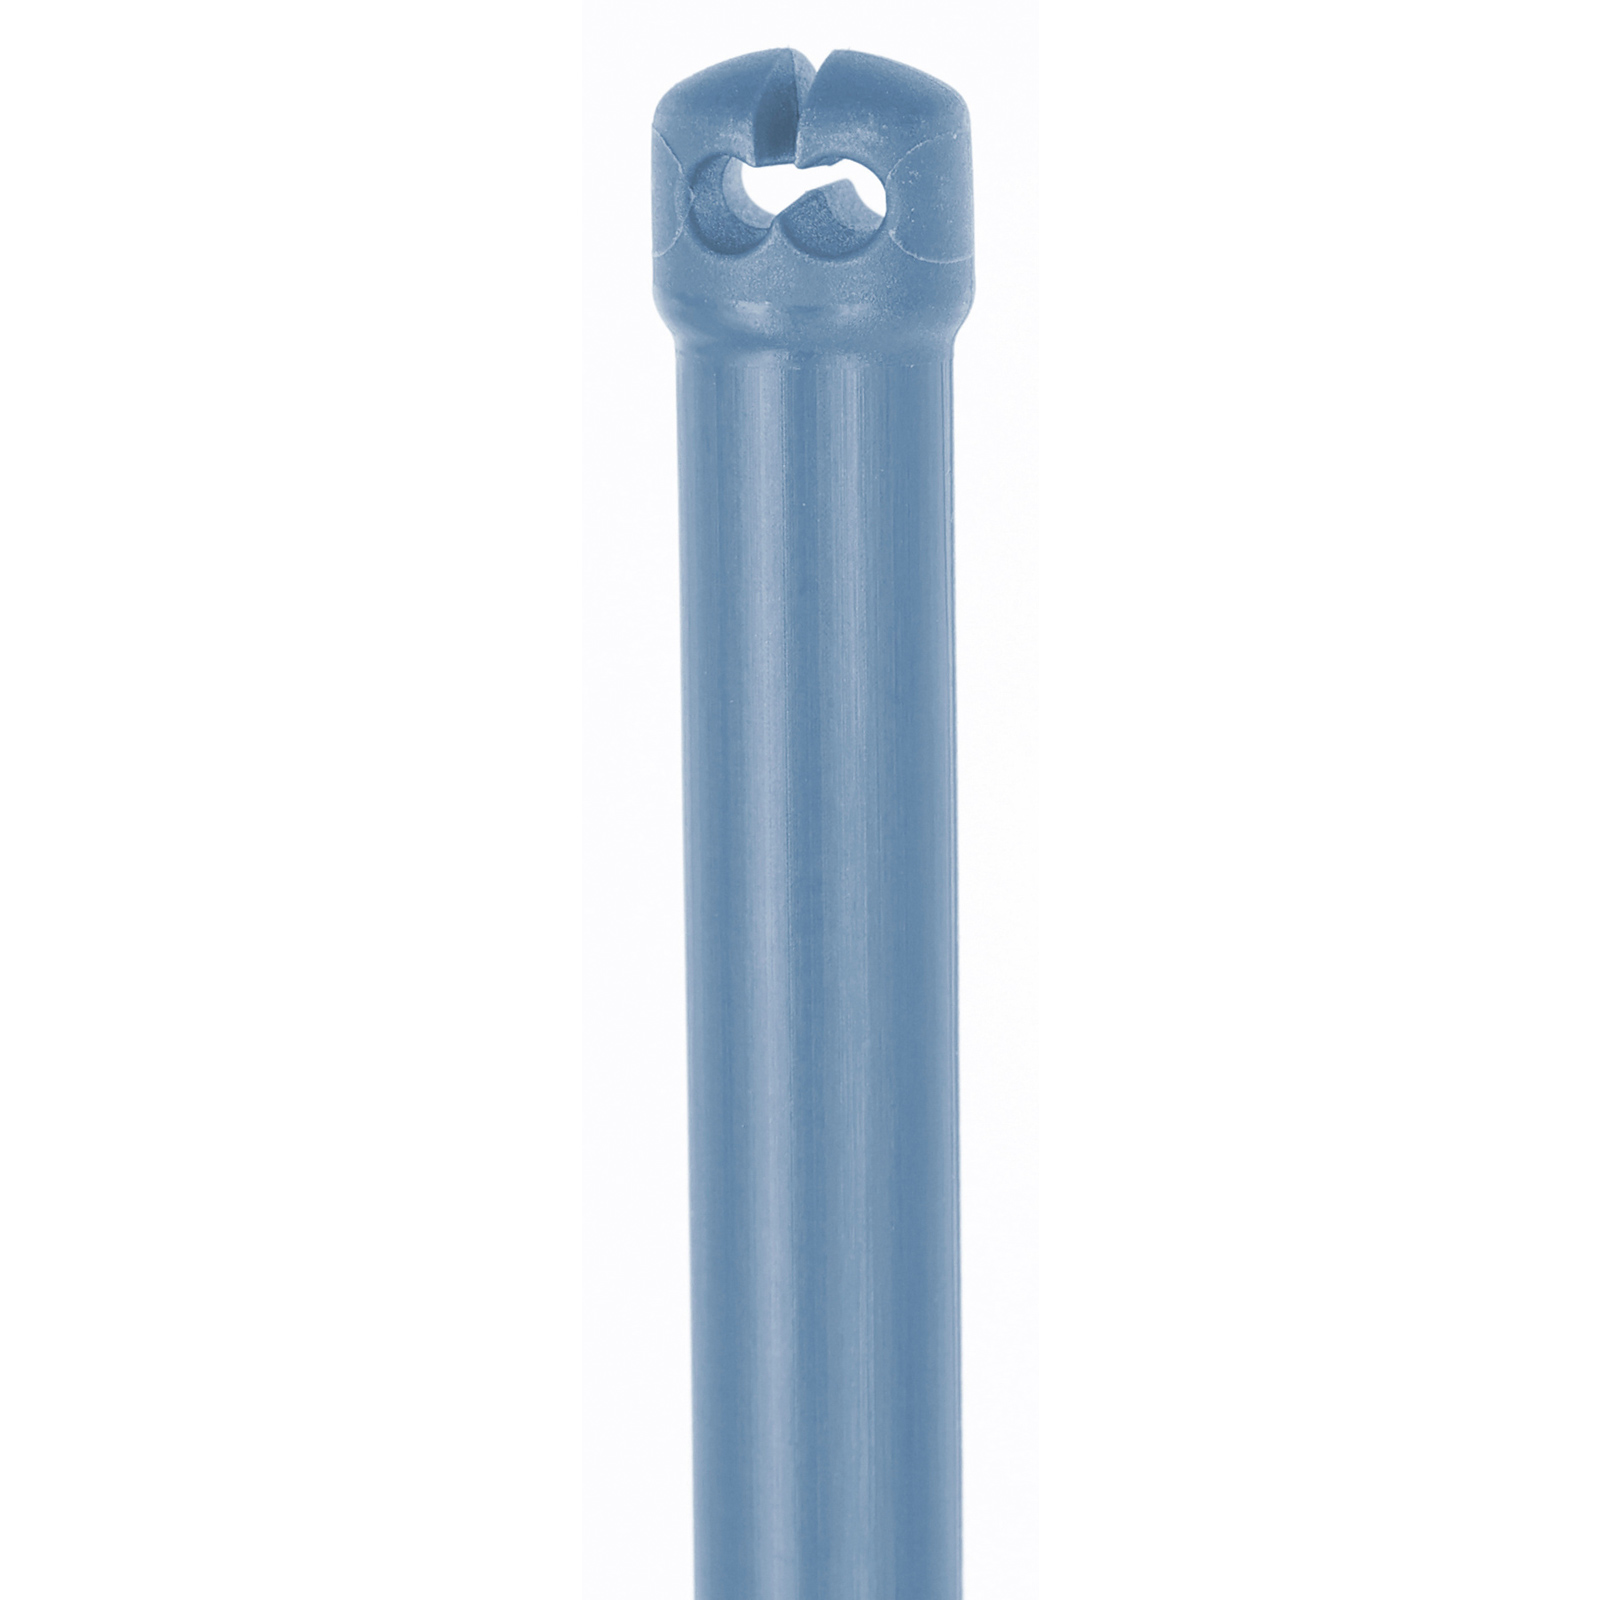 Högkvalitativ termoplastisk glasfiberpinne för korgnät, dubbelspets, blå